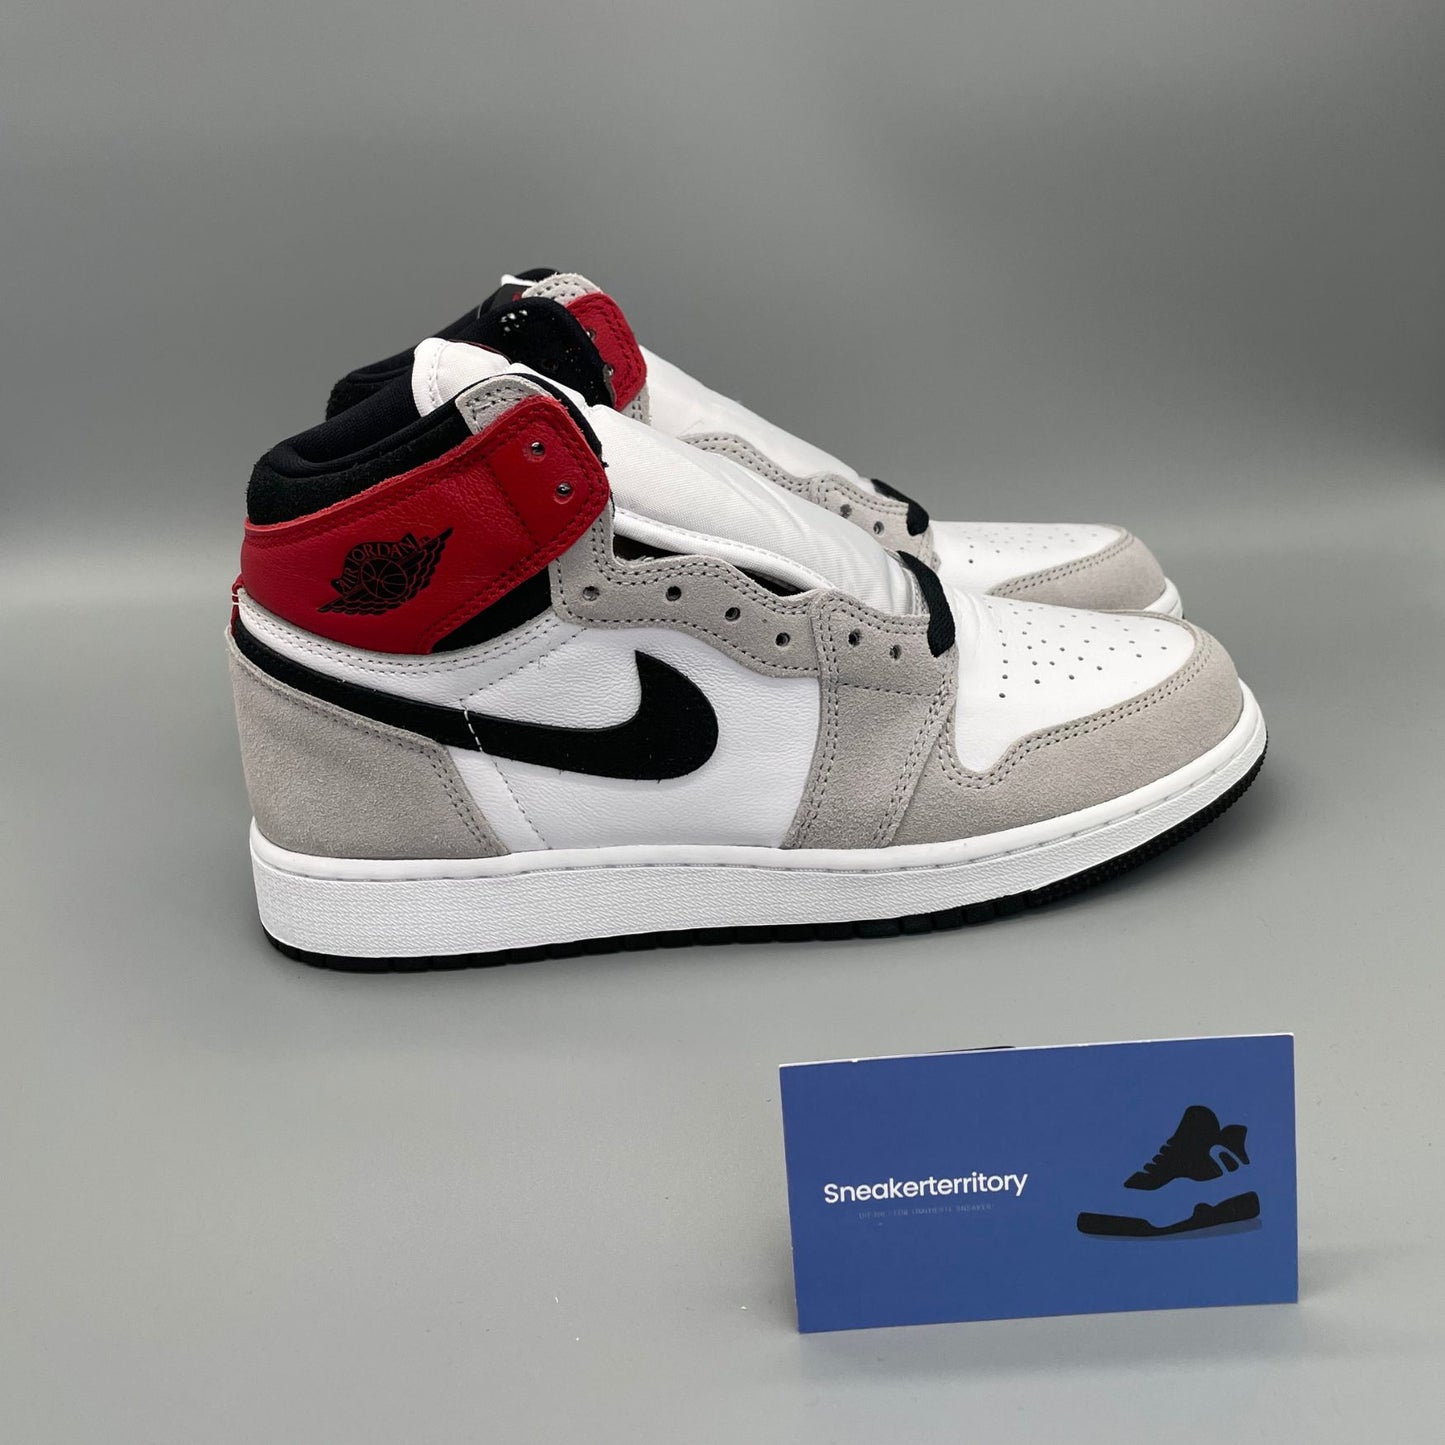 Air Jordan 1 High Light Smoke Grey - Sneakerterritory; Sneaker Territory